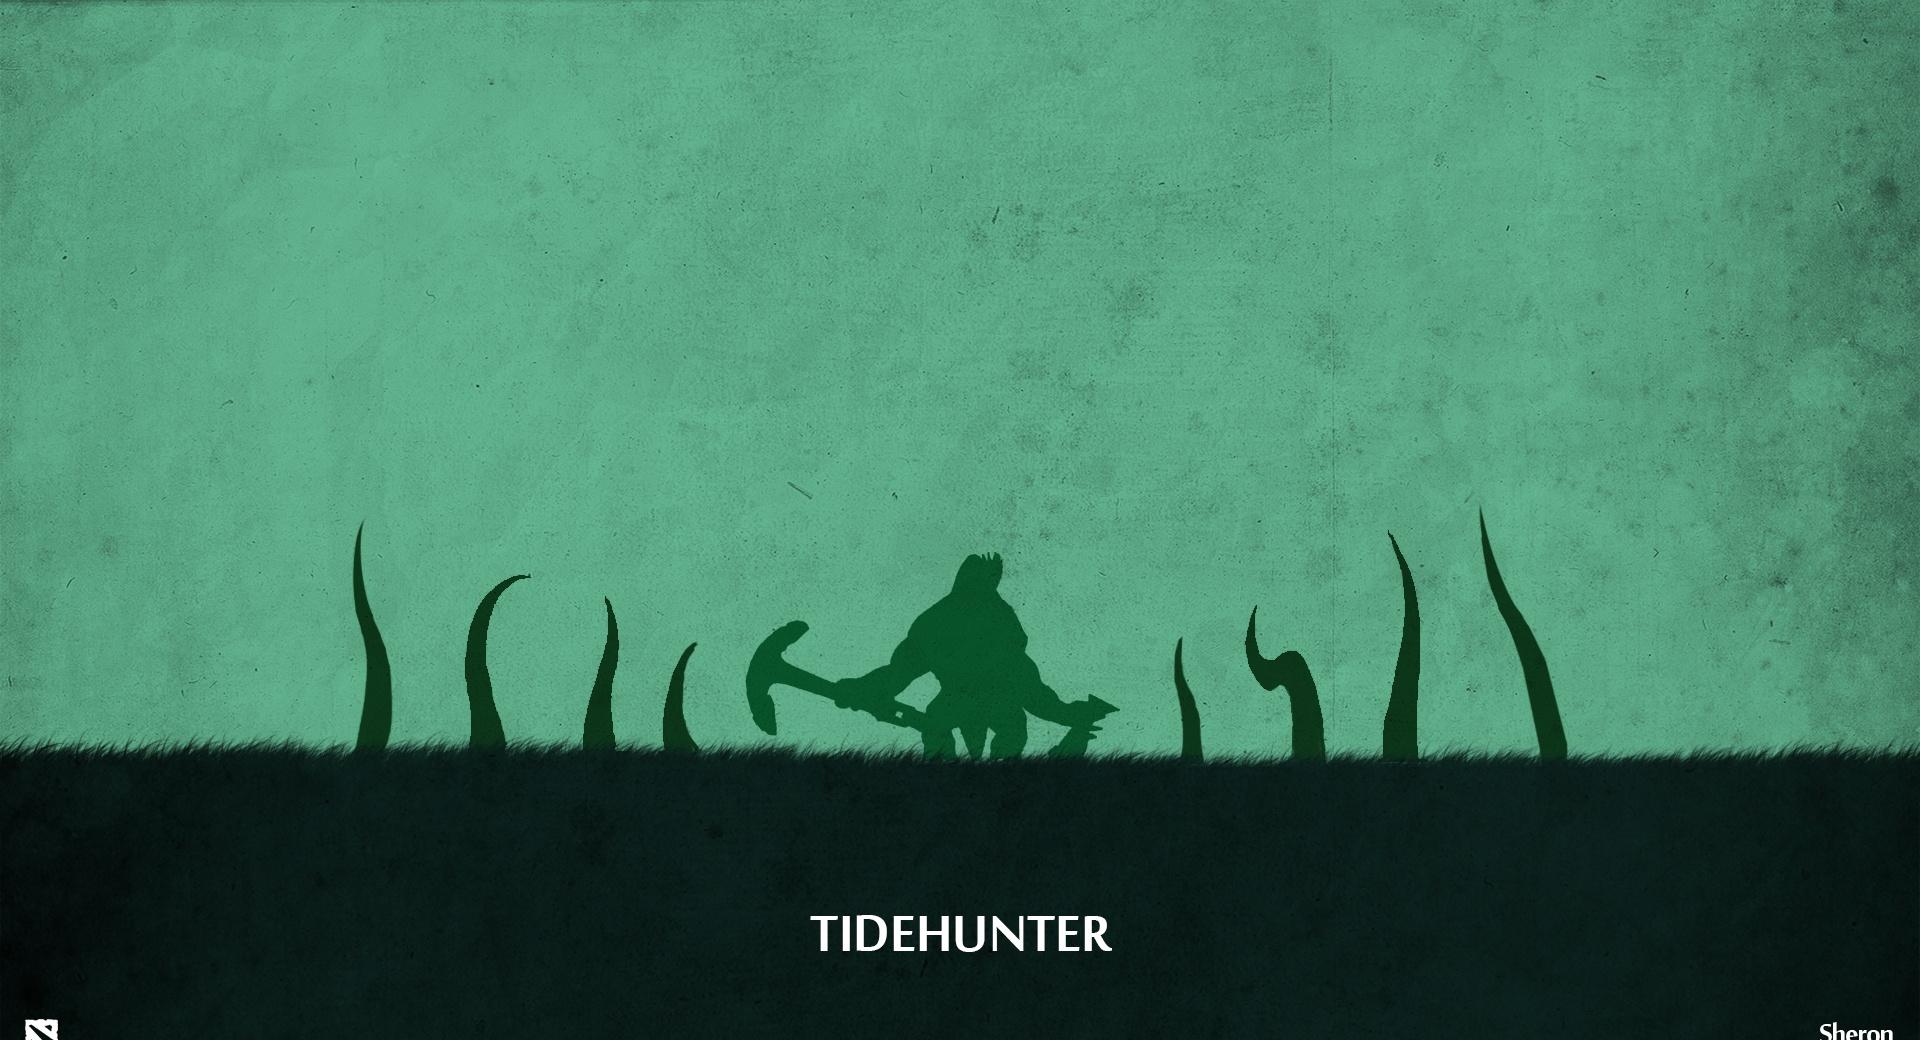 Tidehunter - DotA 2 at 1024 x 1024 iPad size wallpapers HD quality